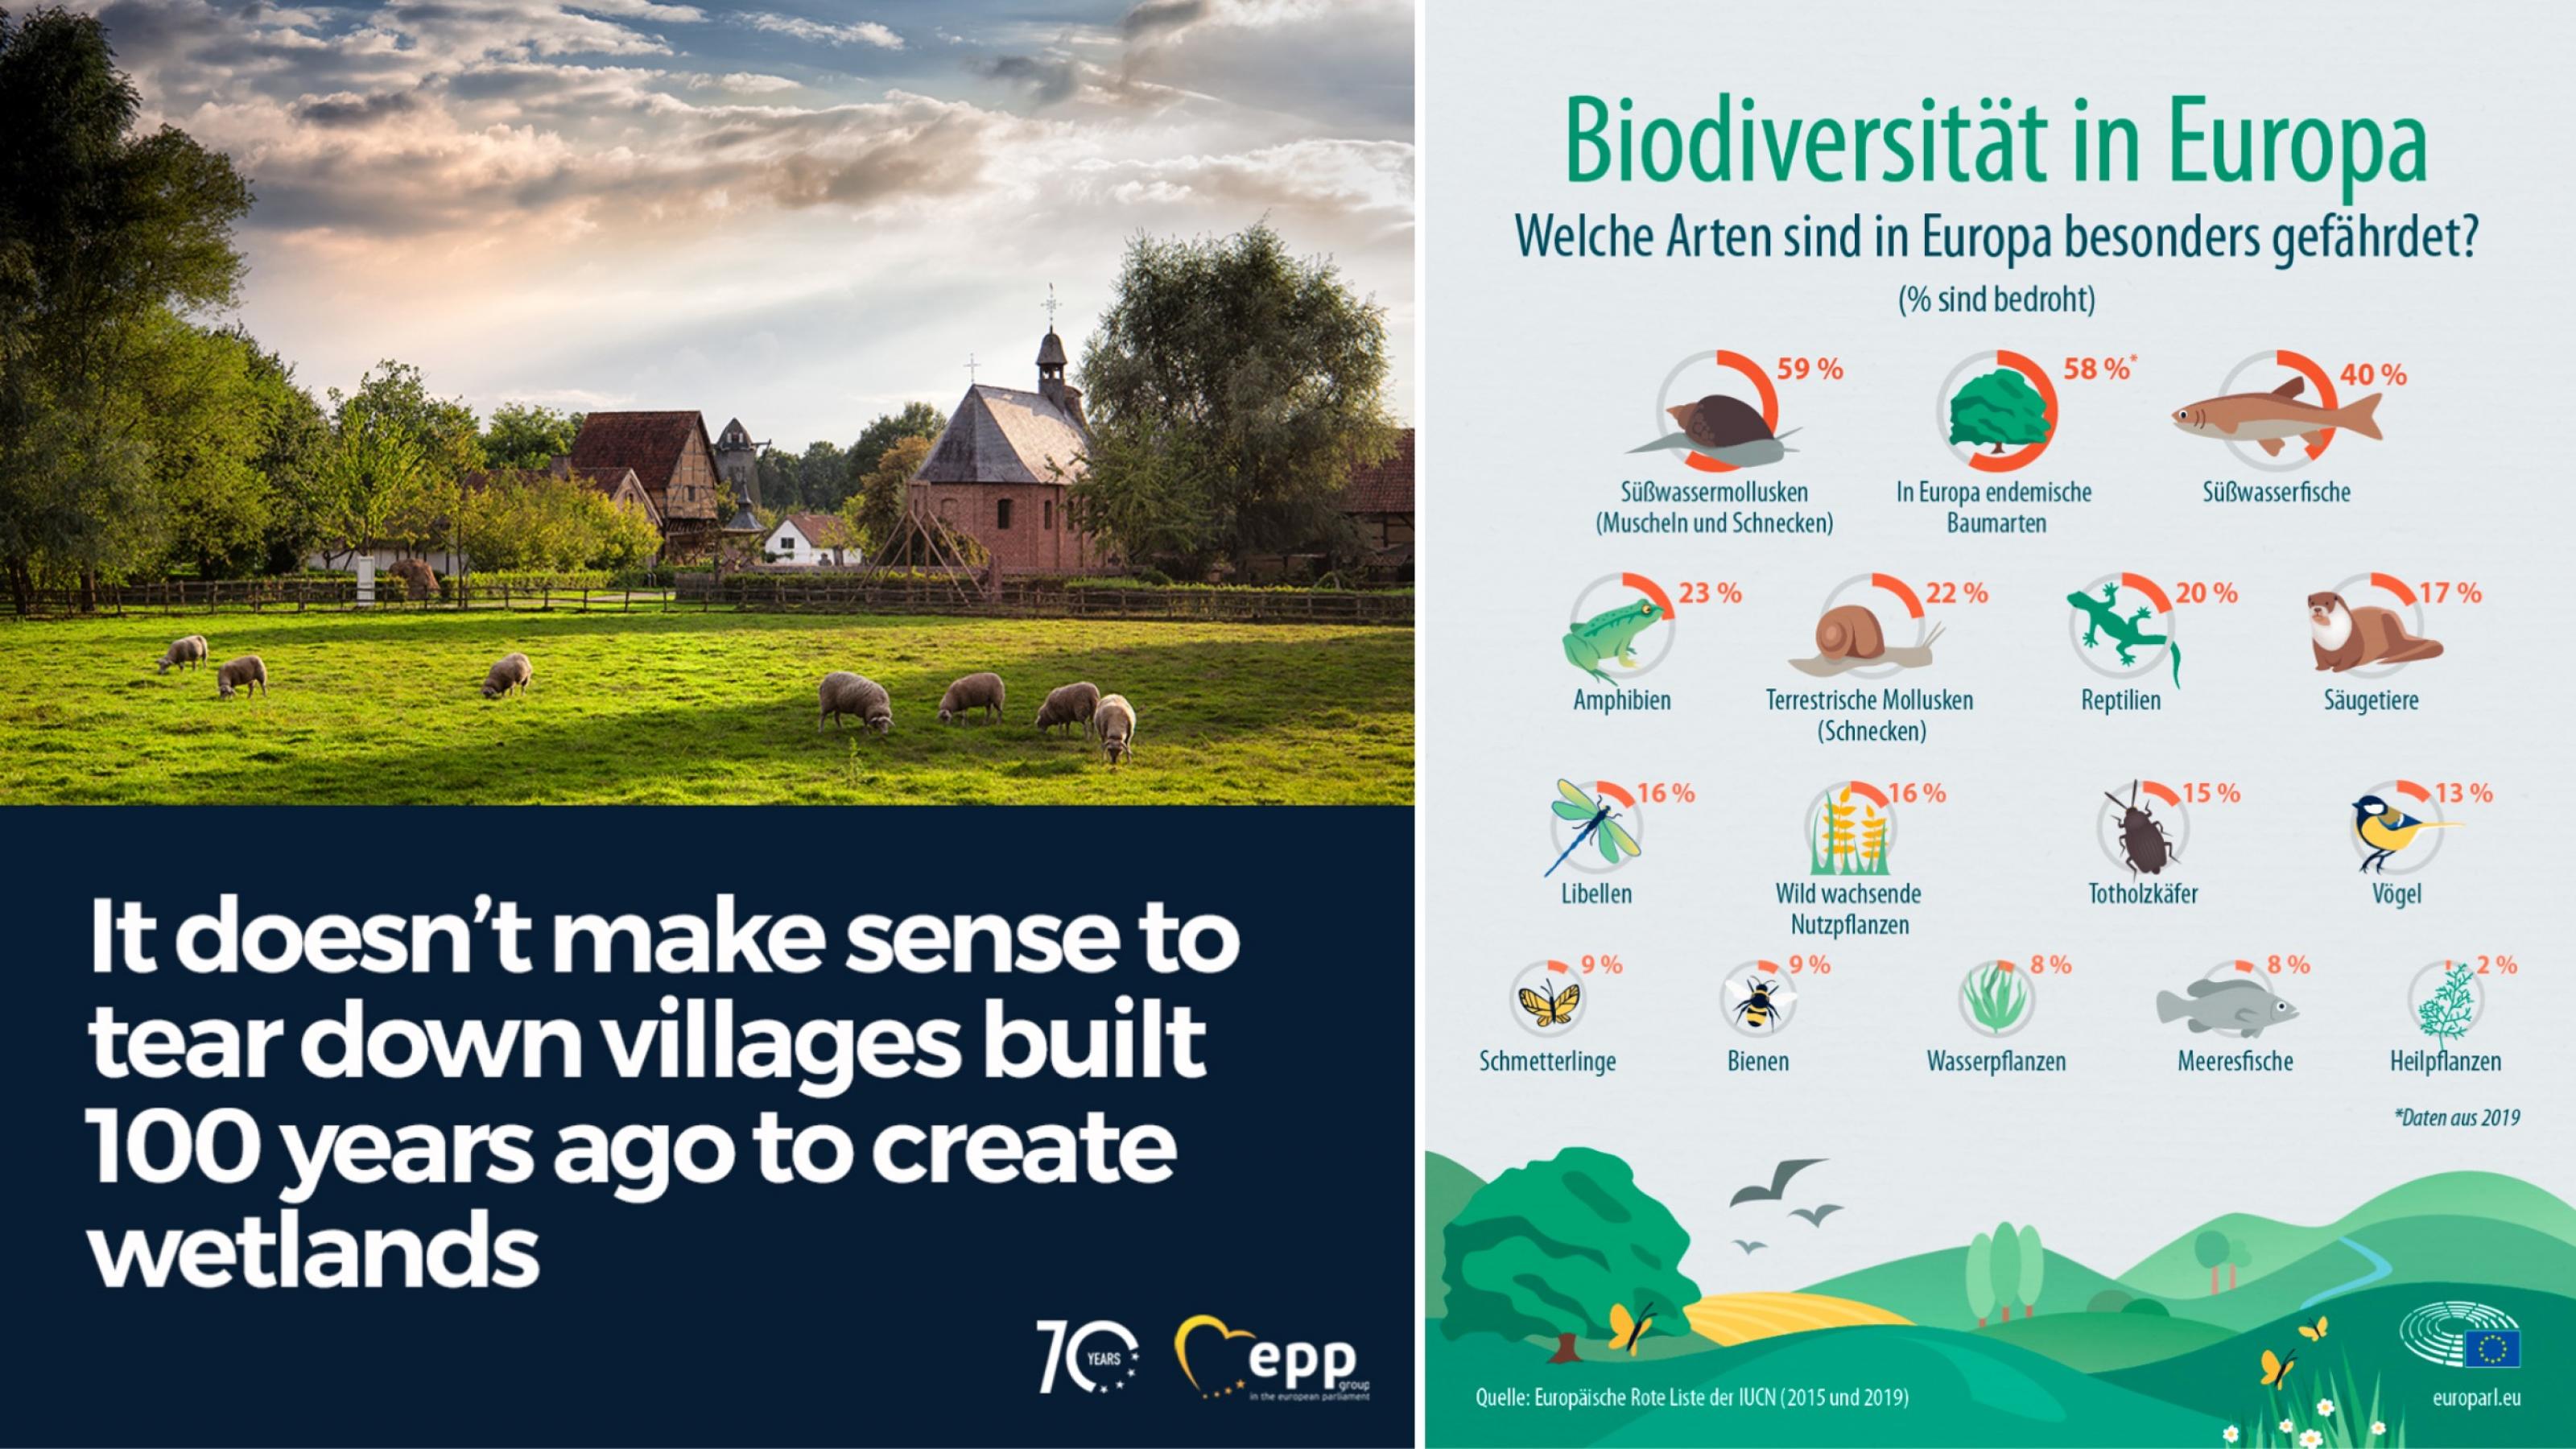 Links eine Kachel der EVP, auf der ein idyllisches Dorf zu sehen ist mit dem Satz, dass man solche Dörfer nicht für die Wiedervernässung von Feuchtgebieten zerstören dürfe. Rechts Übersicht der gefährdeten Artengruppen Europas.